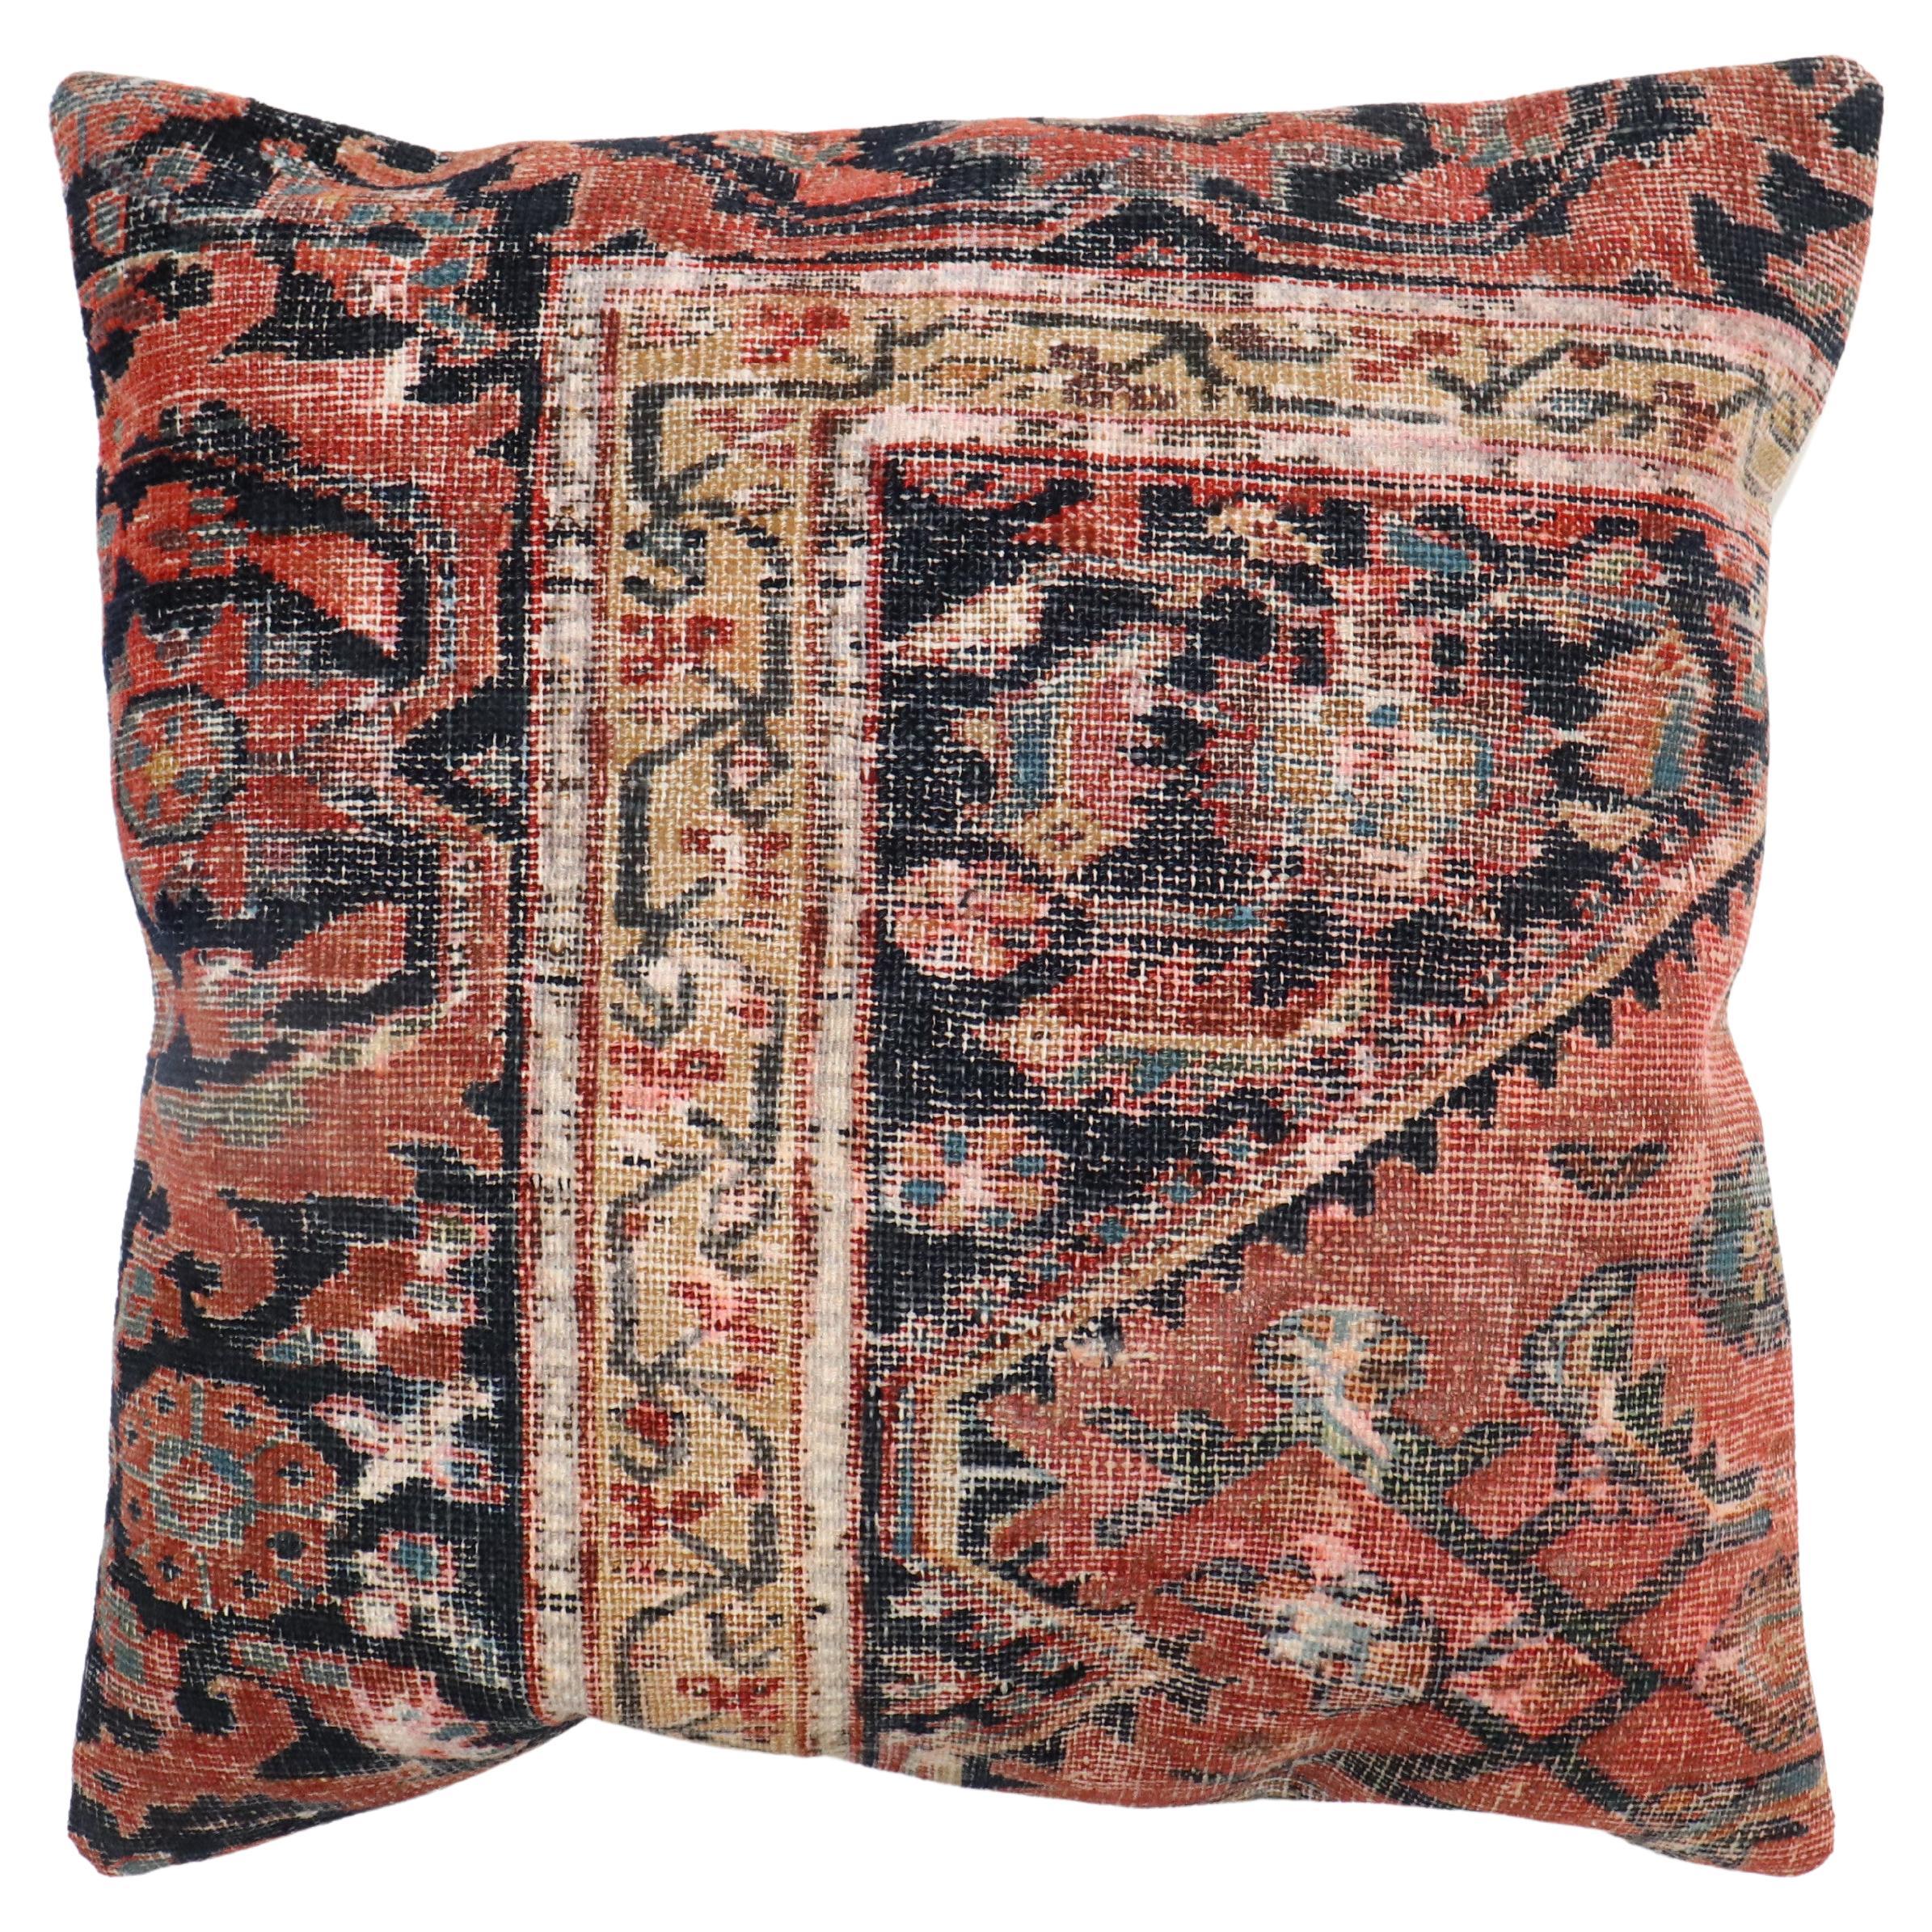 Worn Persian Rustic Rug Pillow